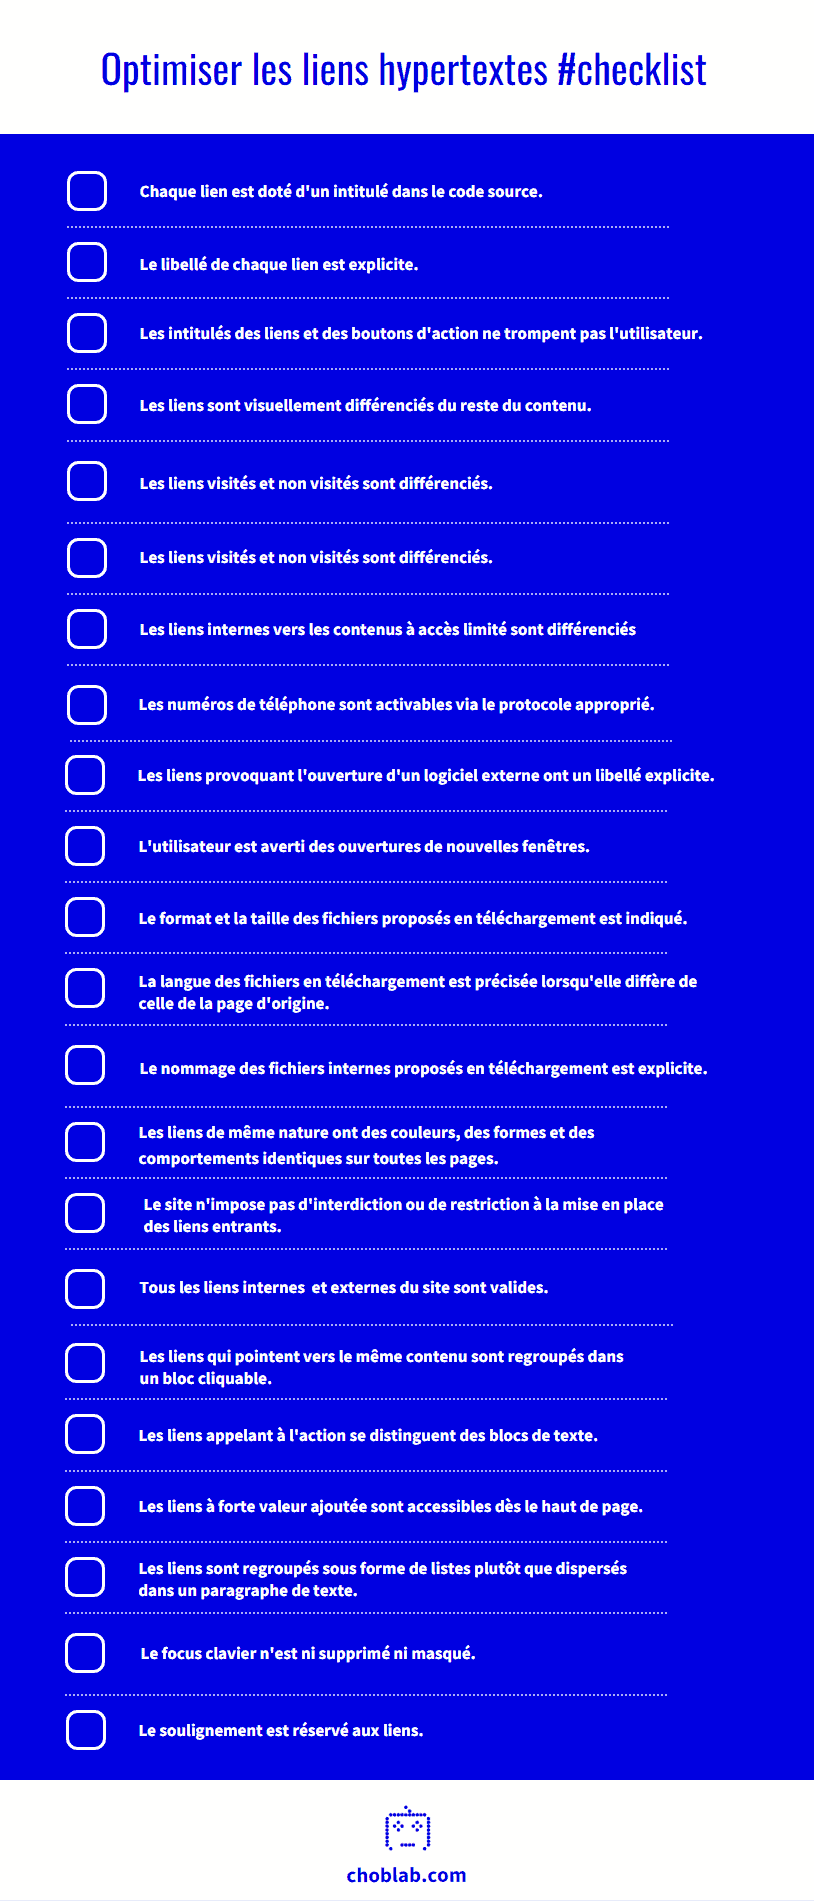 Checklist des bonnes pratiques pour optimiser les liens hypertextes #UX - by choblab [Infographie]